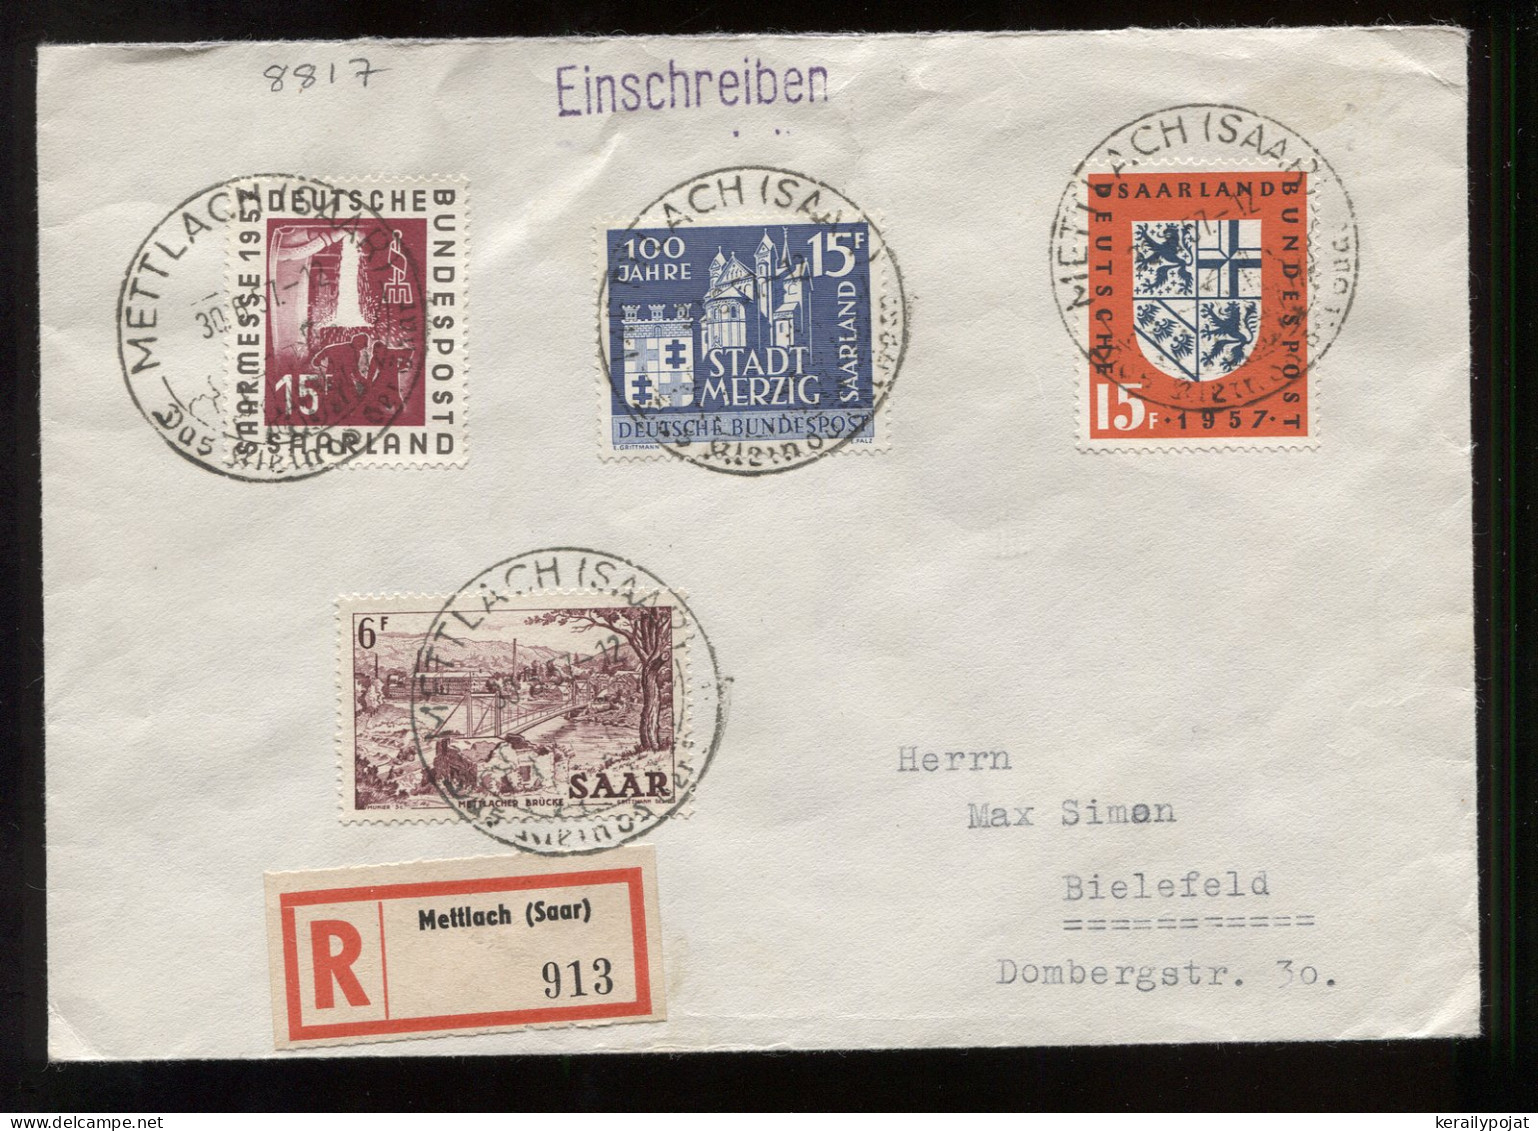 Saarland 1957 Mettlach Registered Cover To Bielefeld__(8817) - Briefe U. Dokumente